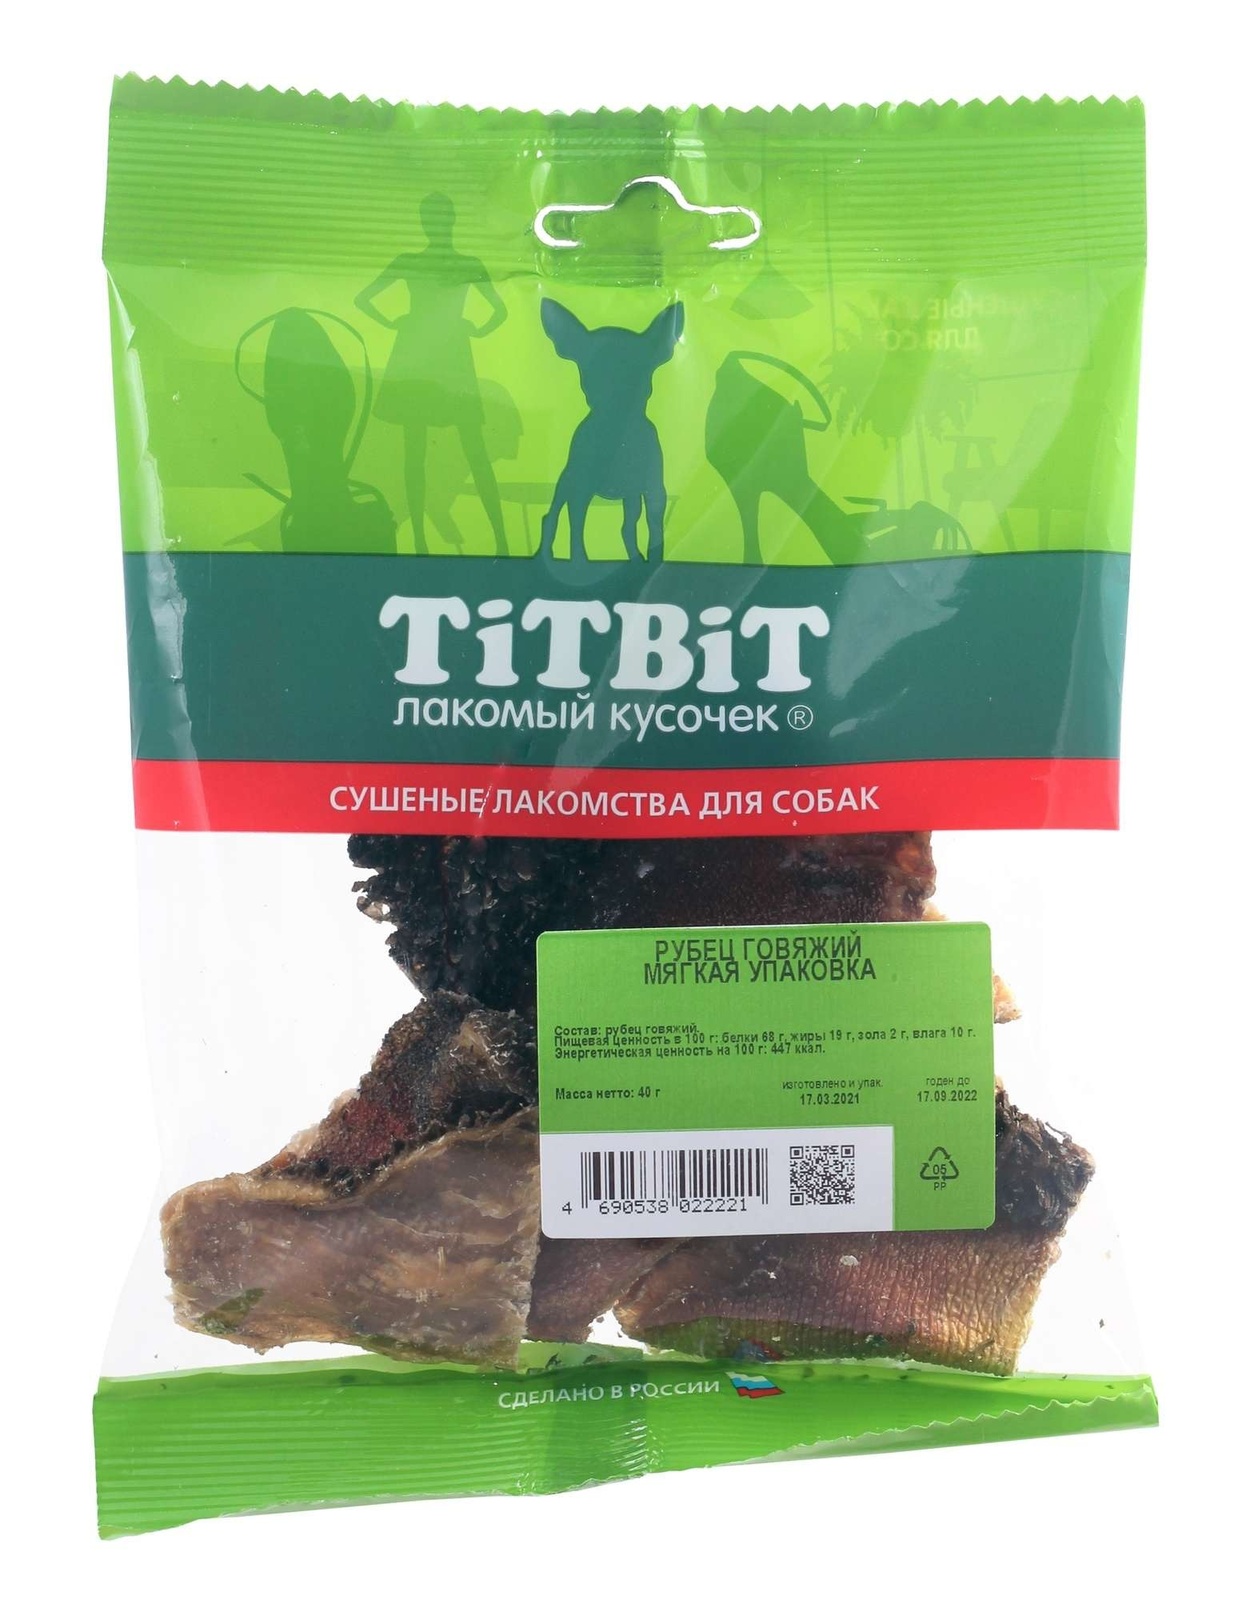 TiTBiT TiTBiT рубец говяжий - мягкая упаковка (40 г) titbit titbit желудок говяжий пластинки мягкая упаковка 50 г